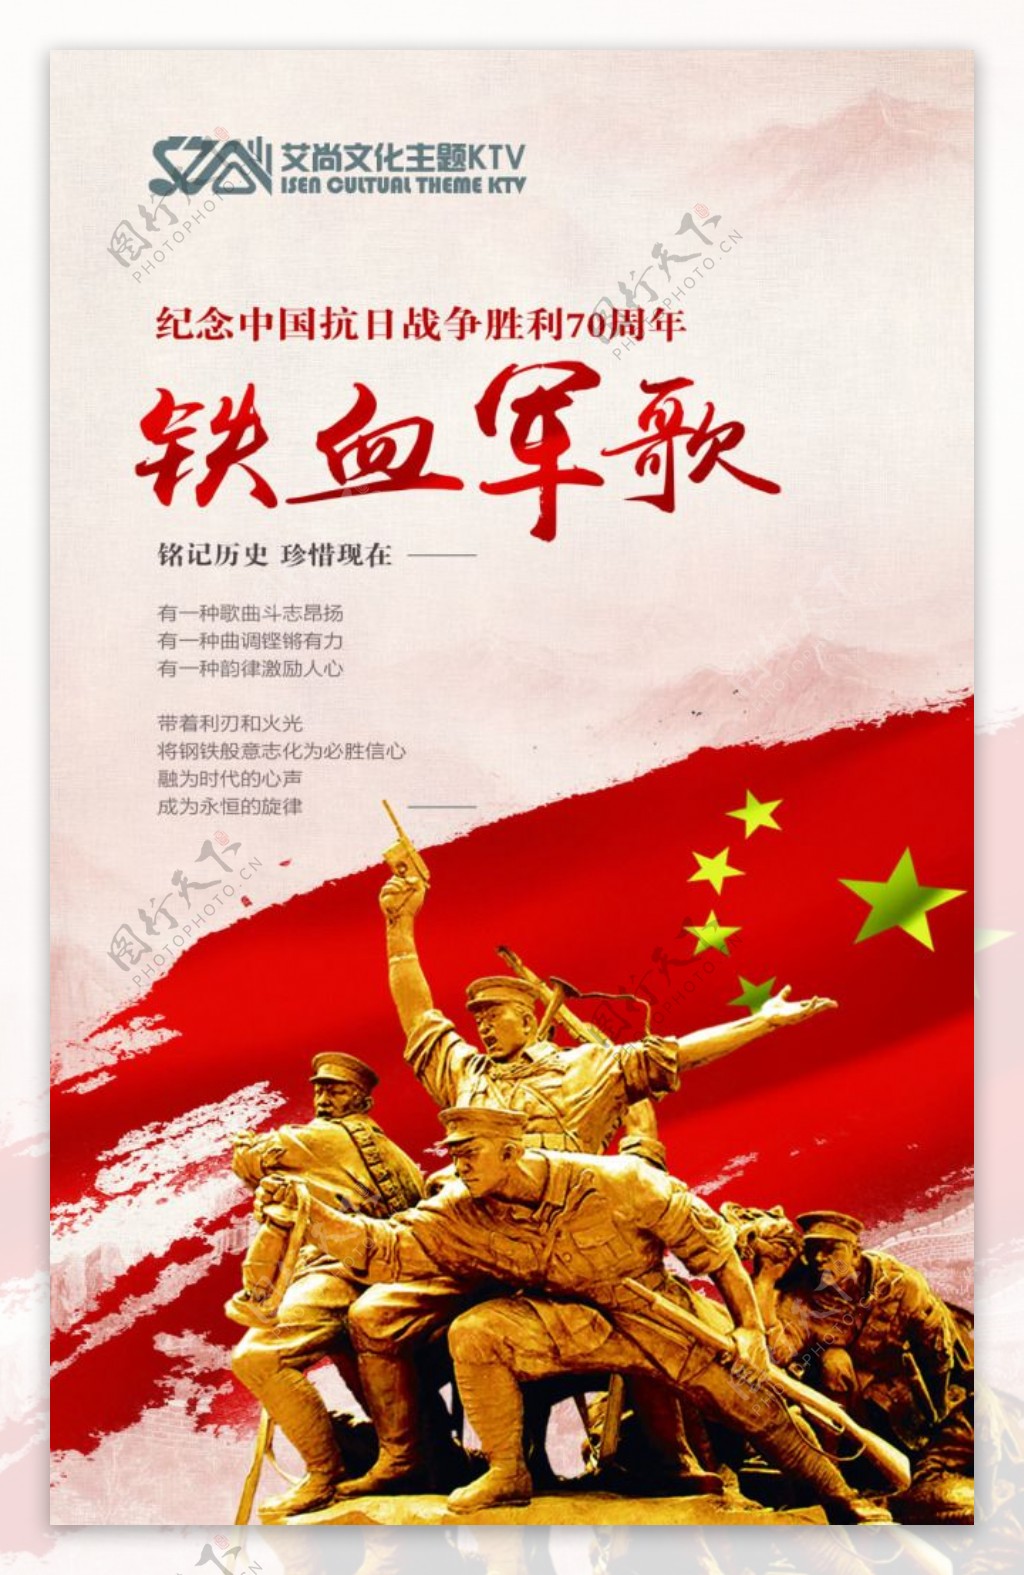 抗日战争胜利70周年海报设计平面广告素材免费下载(图片编号:5351967)-六图网